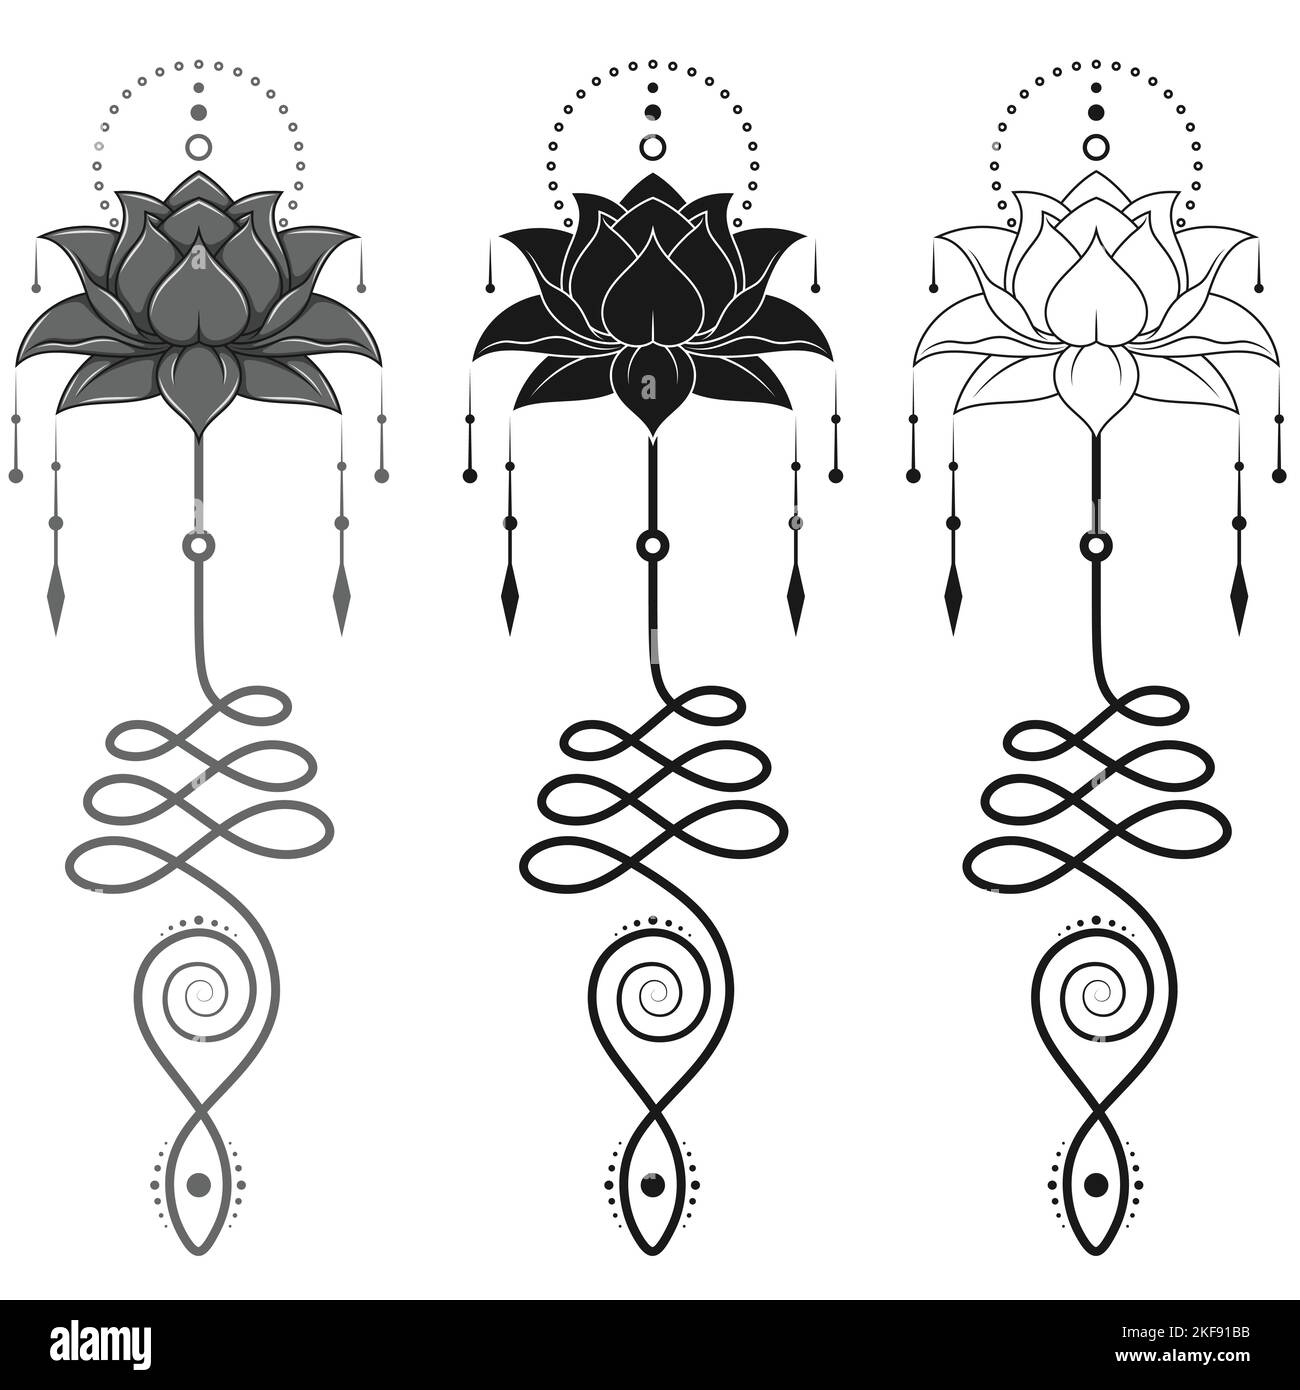 Lotus Flower Vector Design avec symbole hindou unalome, symbole yoga et induisme, motifs de fleurs de lotus pour tatouage Illustration de Vecteur